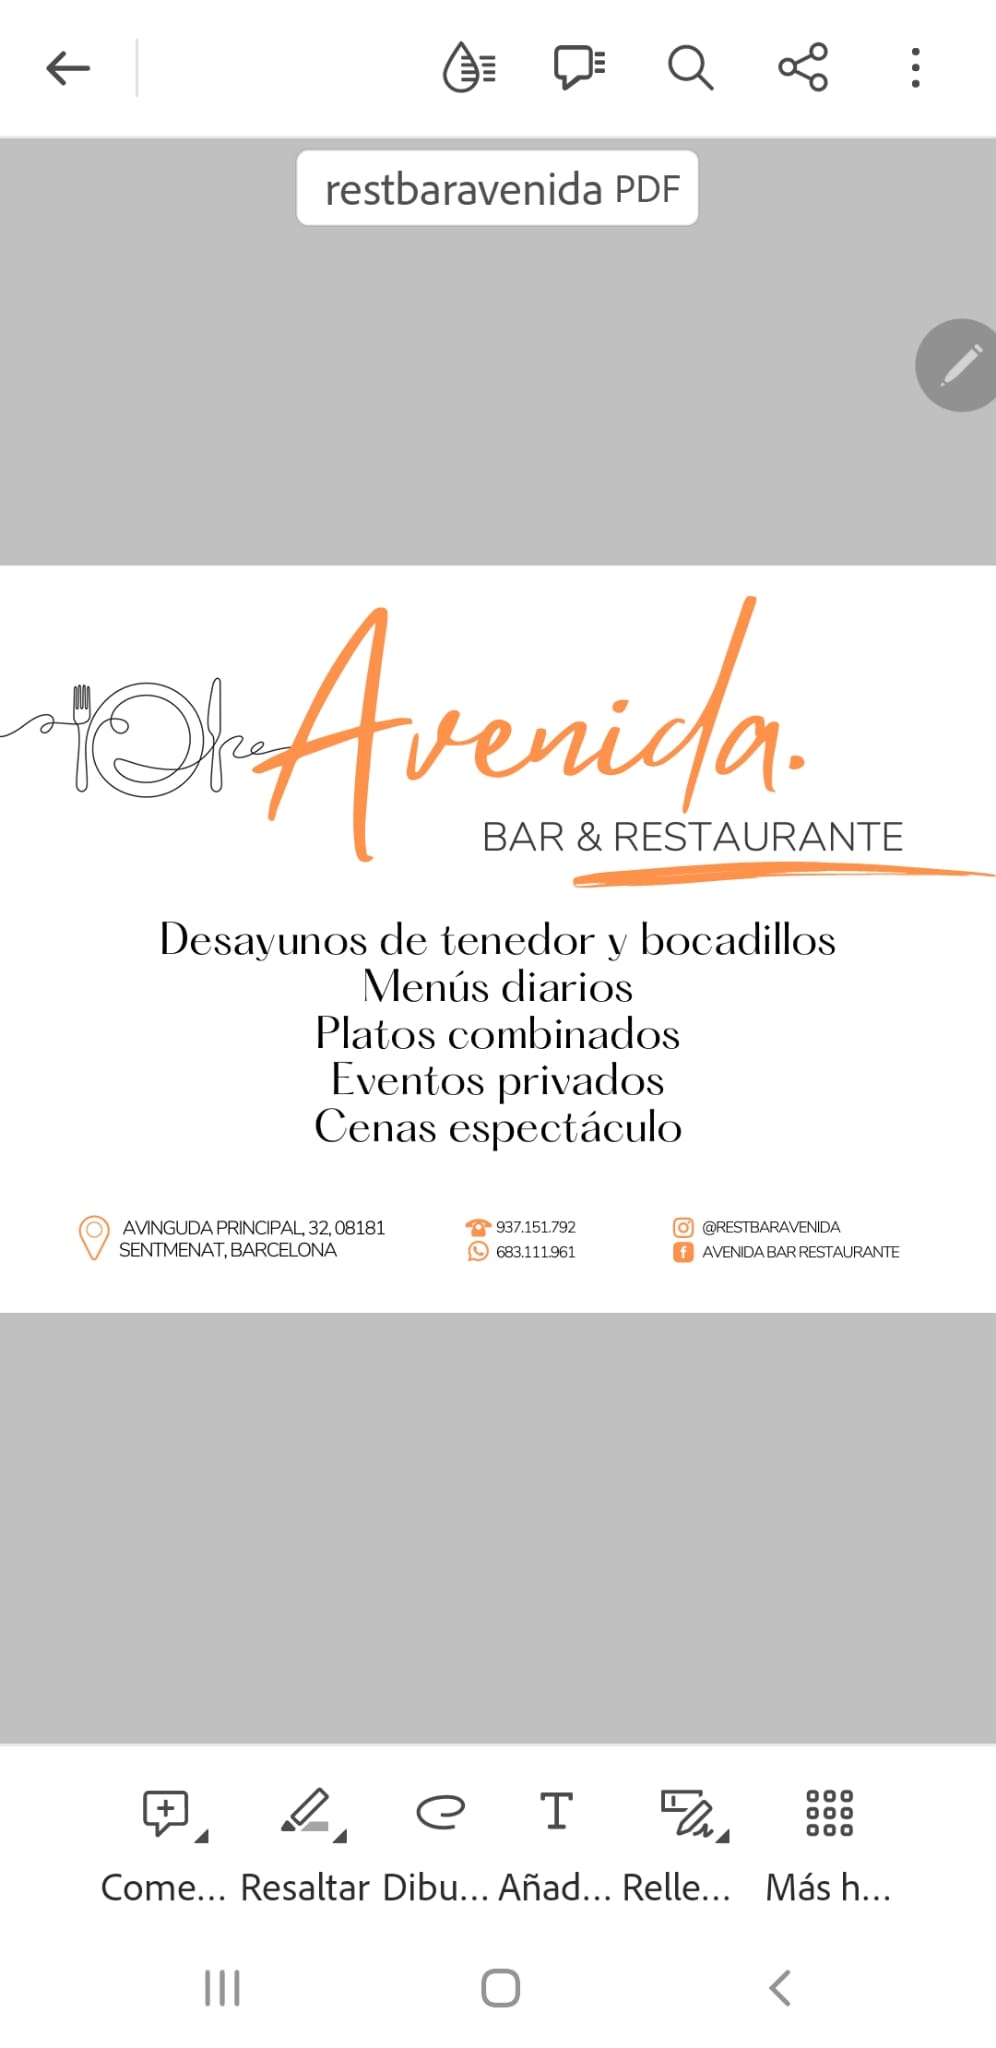 Images Avenida Bar Restaurante